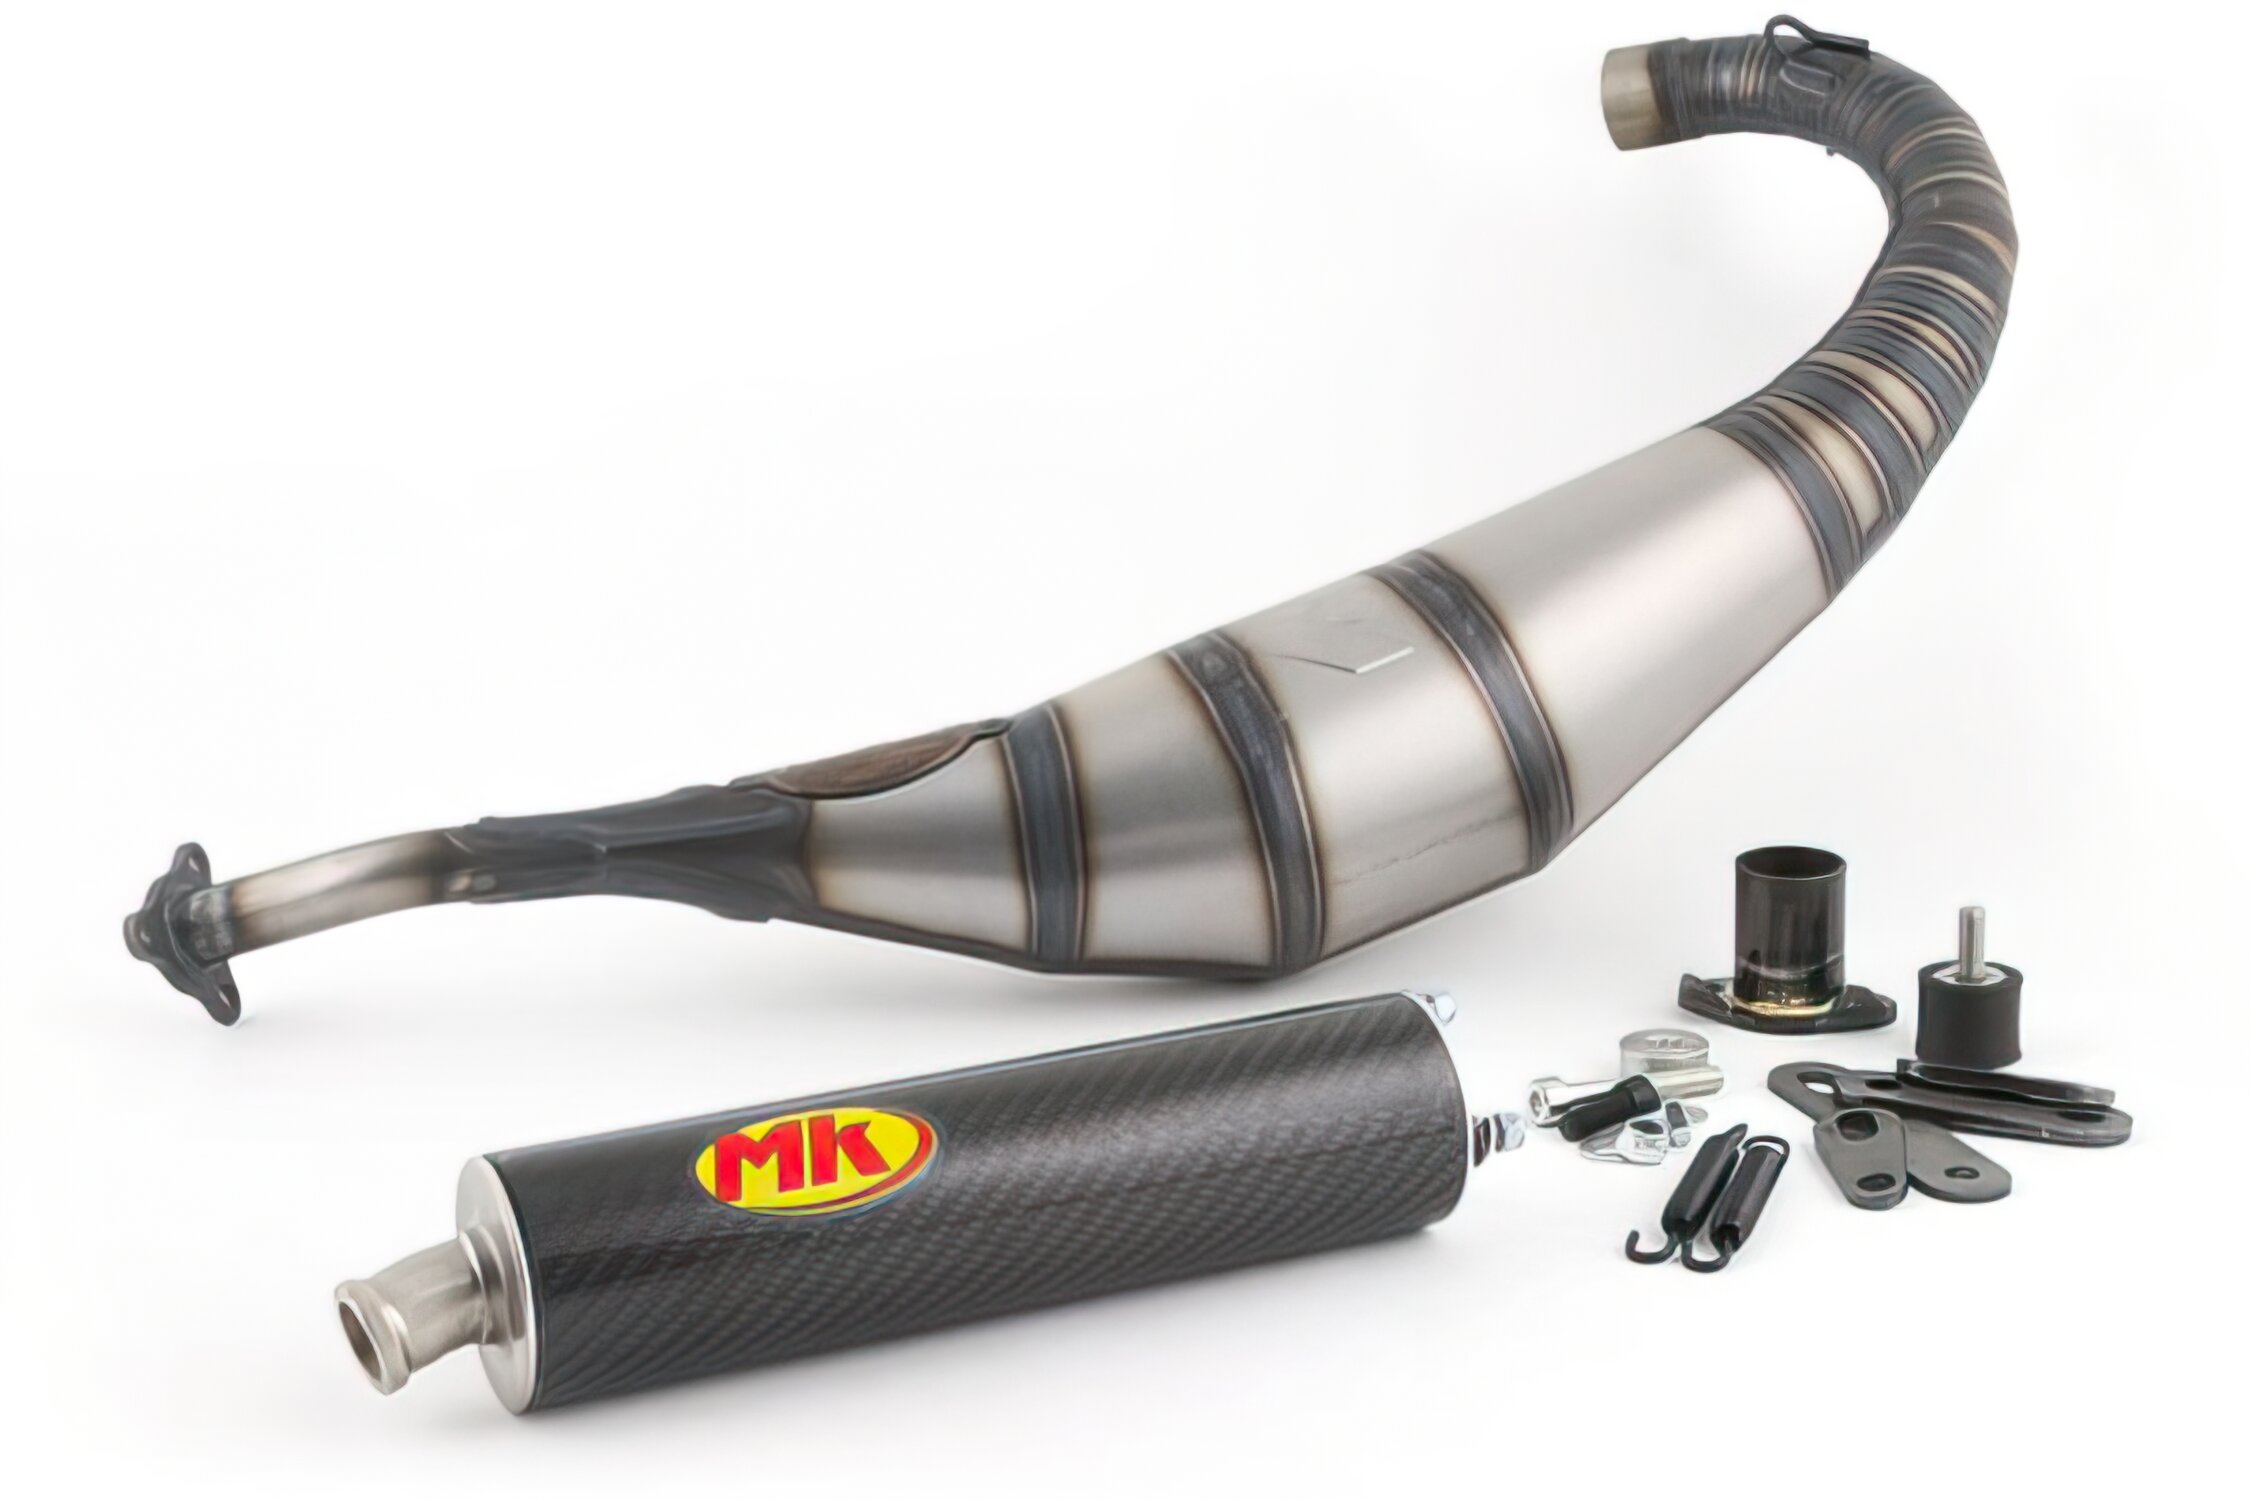 Kit cylindre Métrakit 70cc Pro Race 3 EURO 2 – Onyx-racing-parts